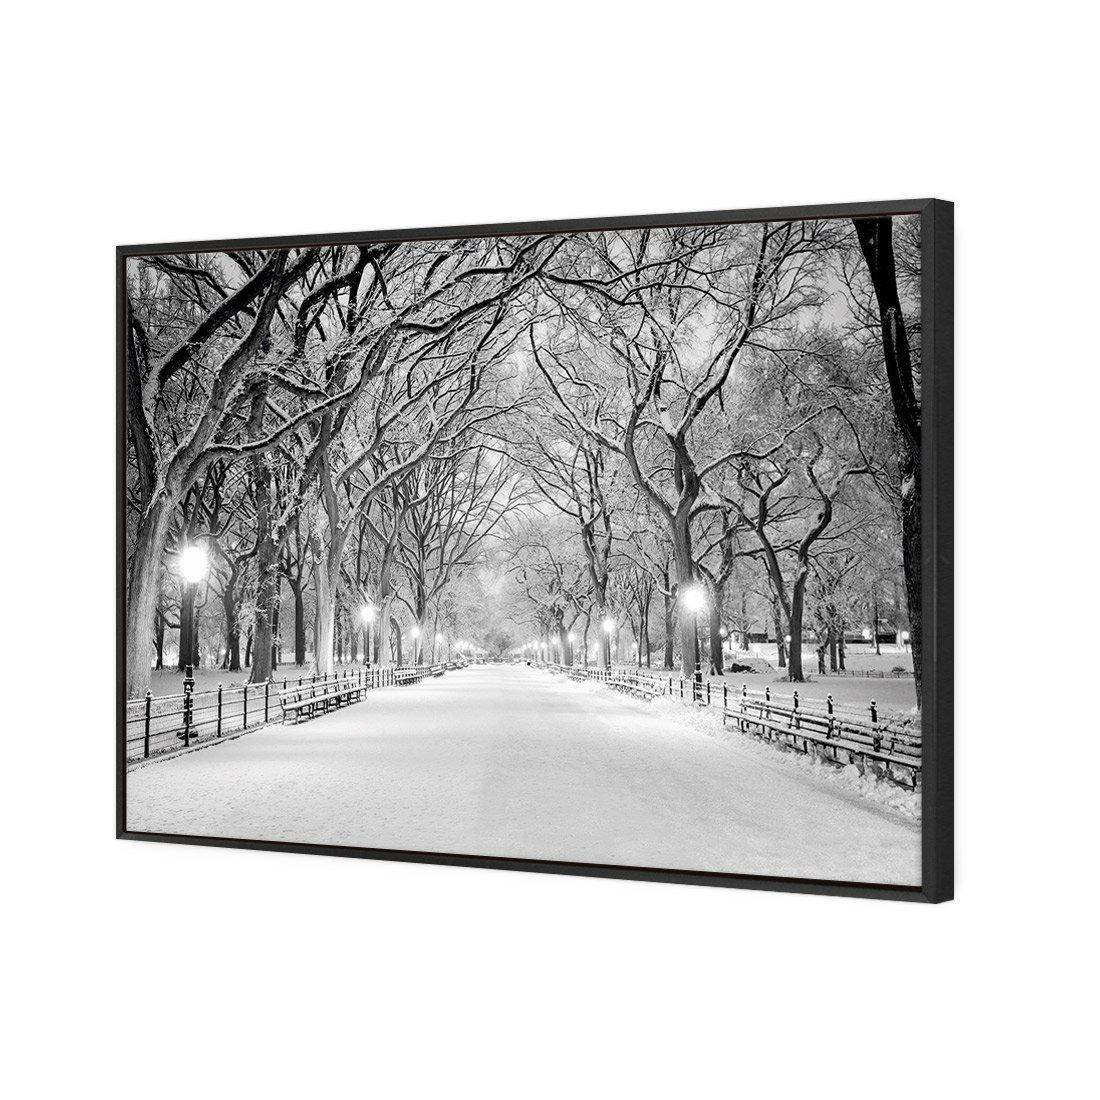 Central Park Dawn in Snow Canvas Art-Canvas-Wall Art Designs-45x30cm-Canvas - Black Frame-Wall Art Designs